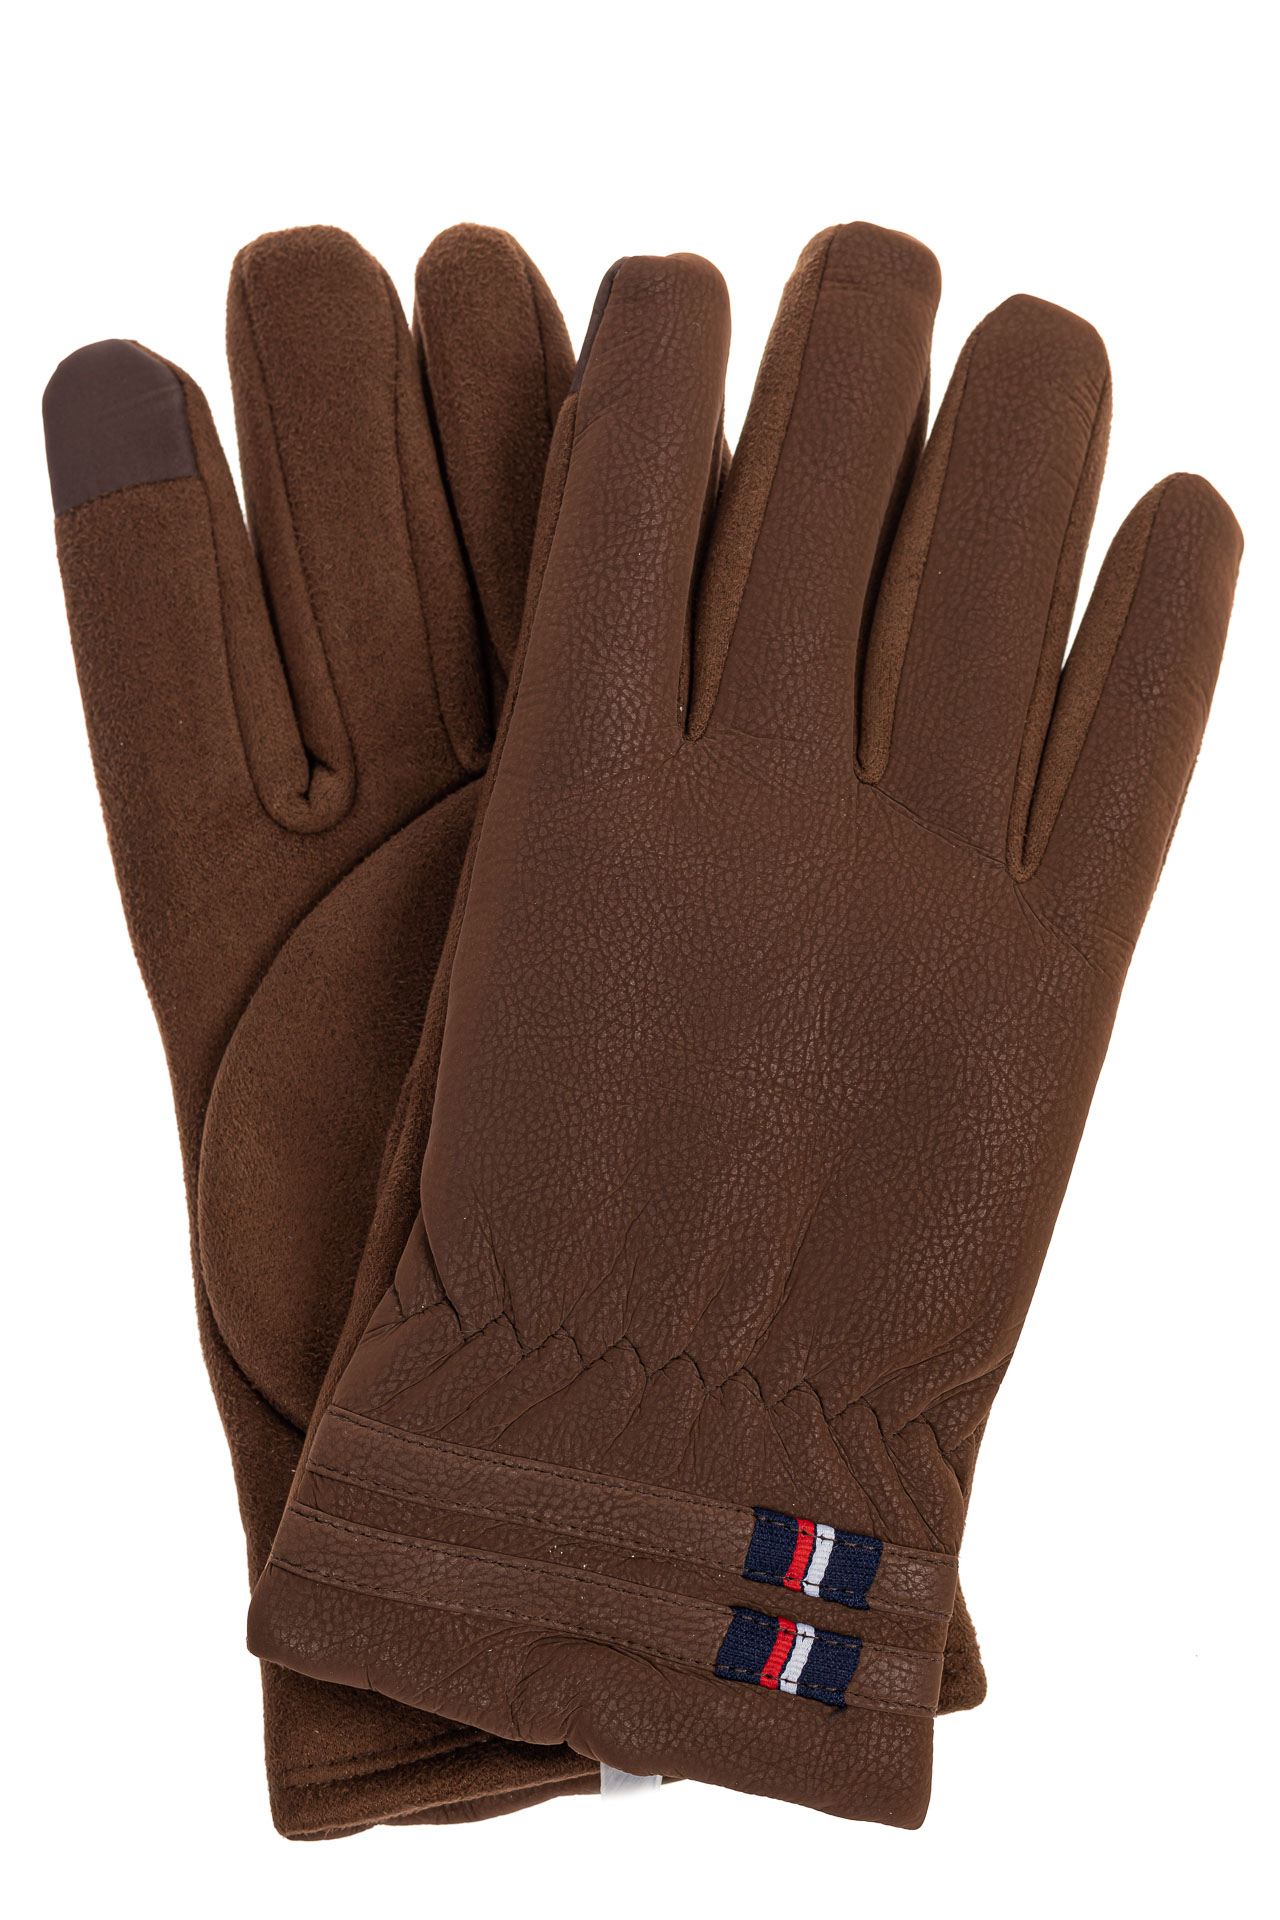 Утепленные перчатки мужские из велюра, цвет коричневый